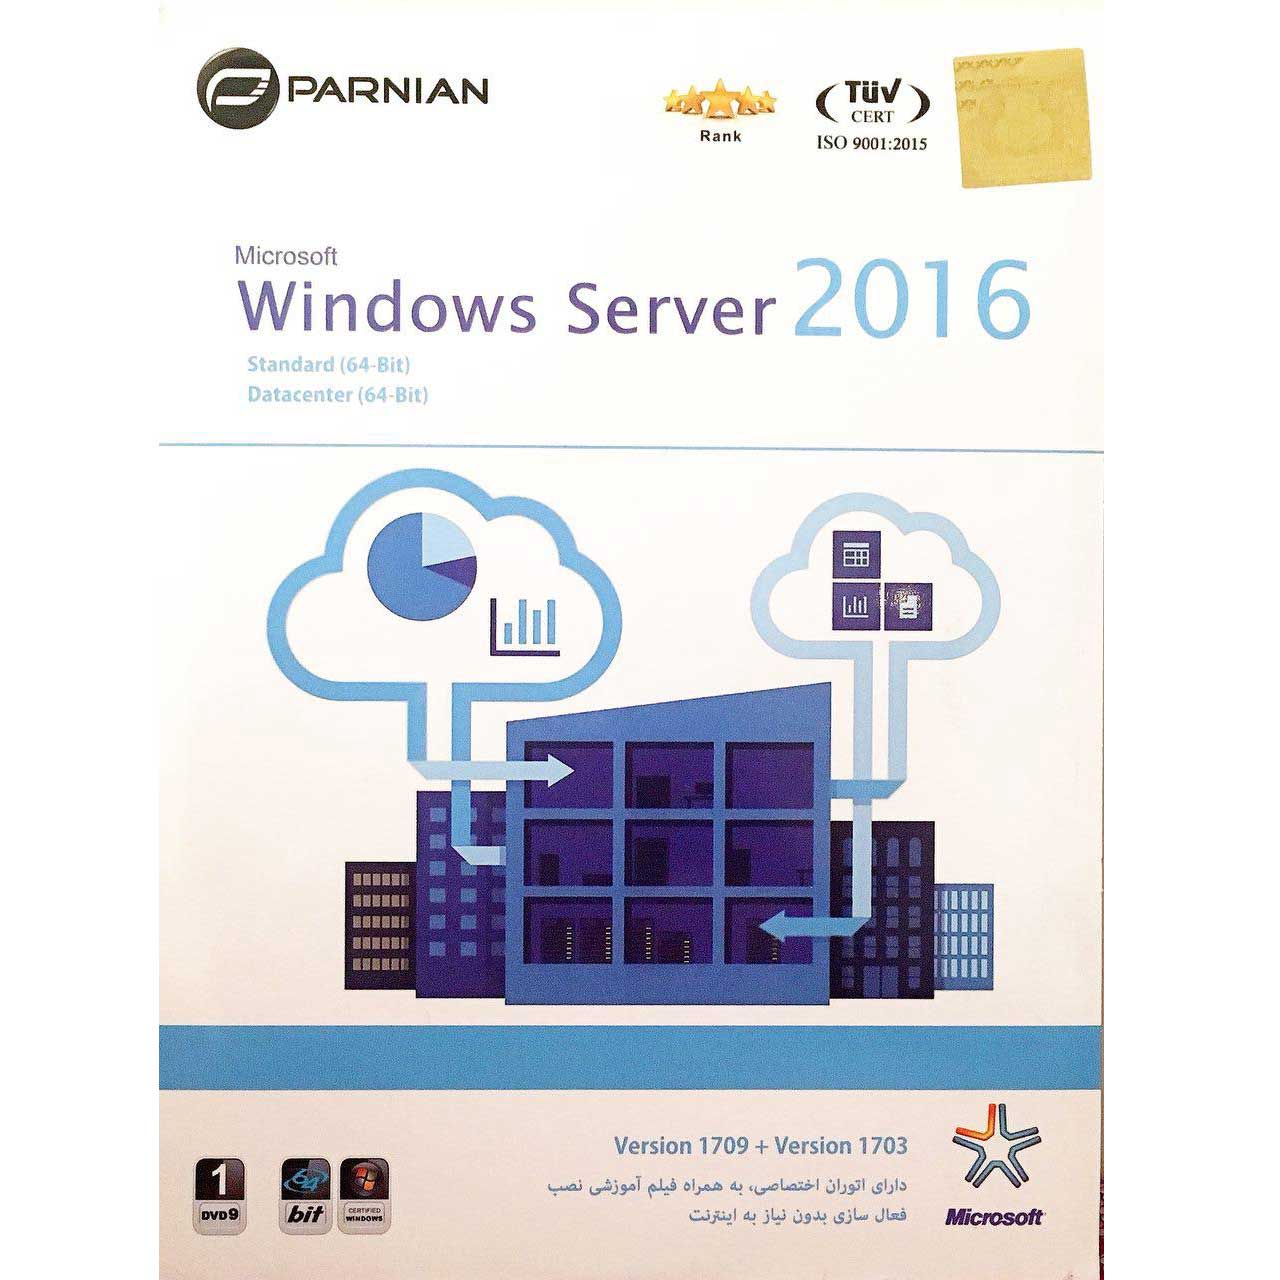 نرم افزار Windows Server 2016 نشر پرنیان 